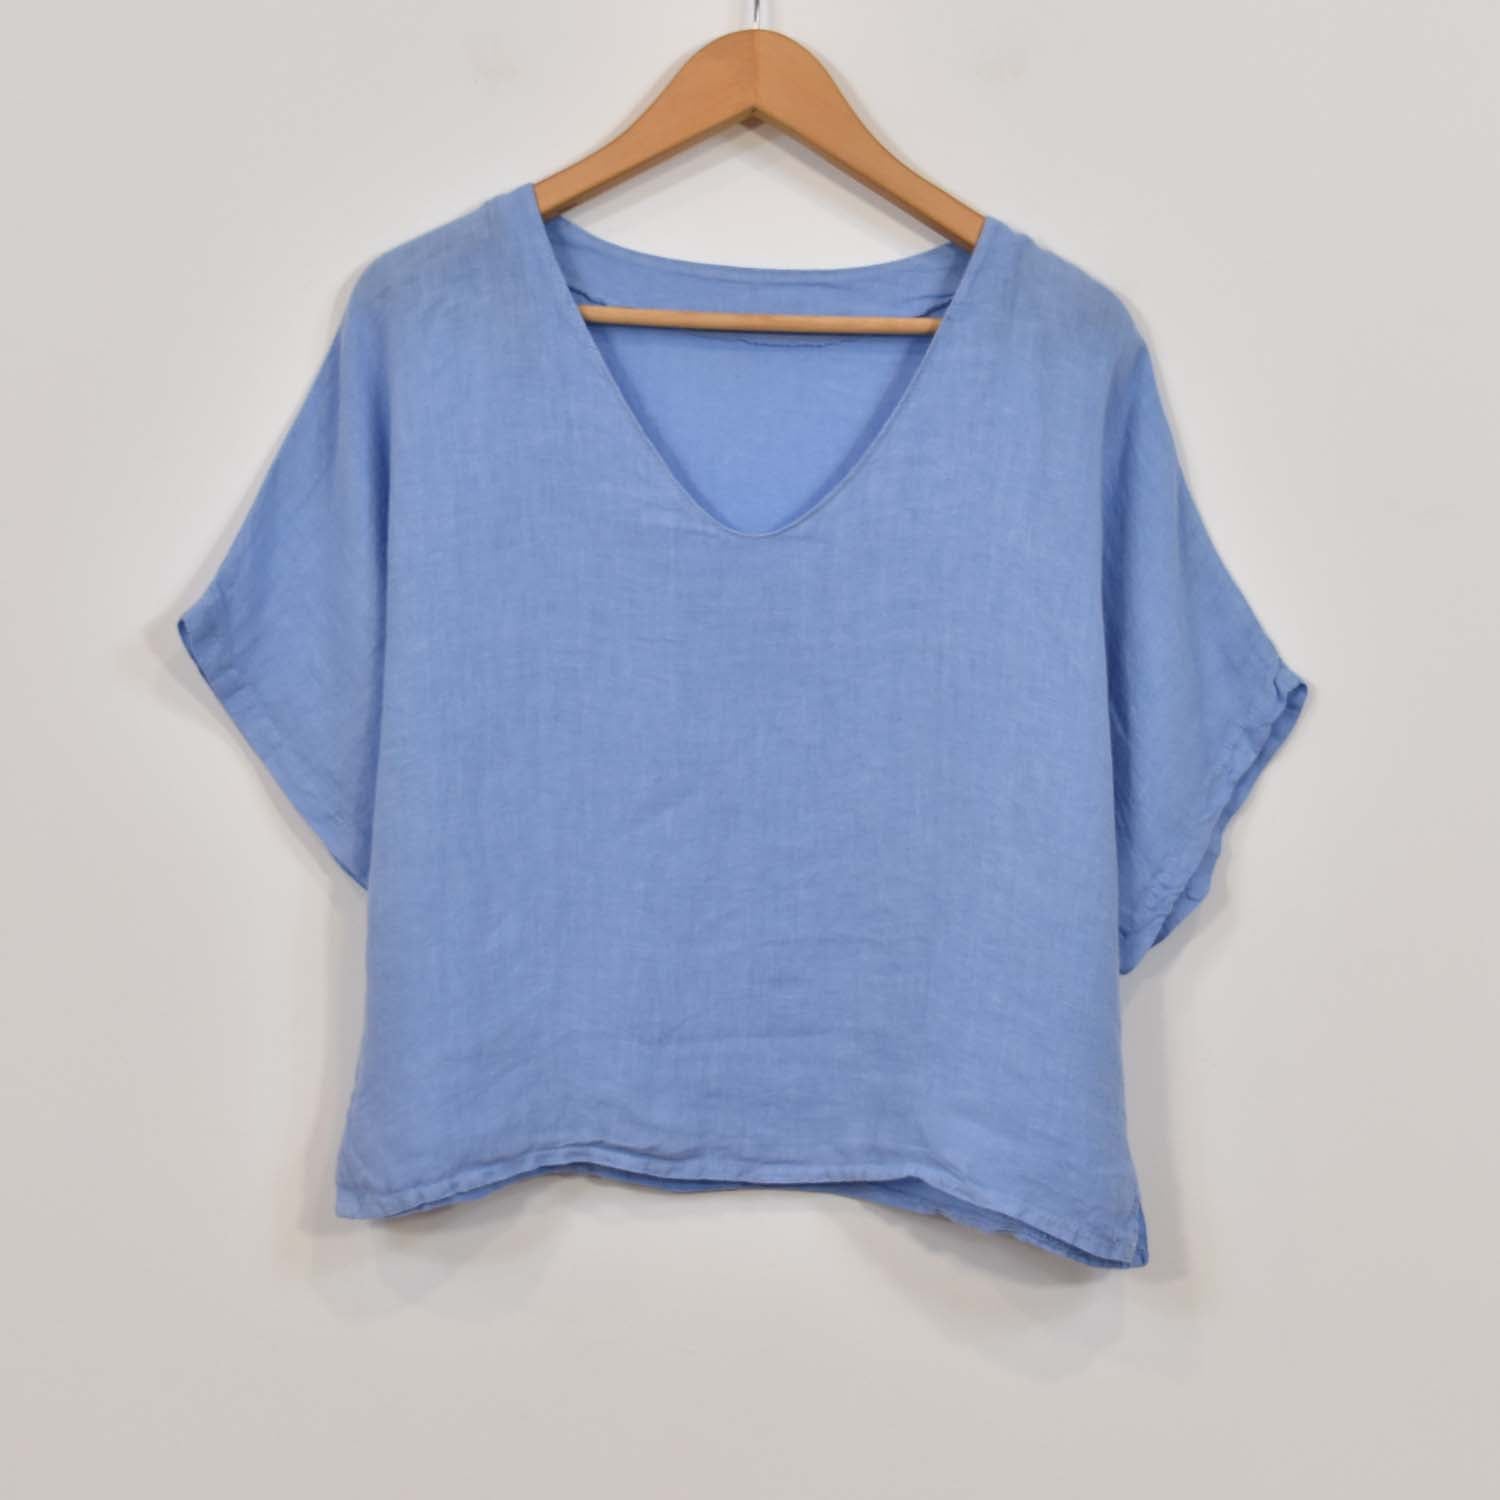 Blue V-neck linen blouse